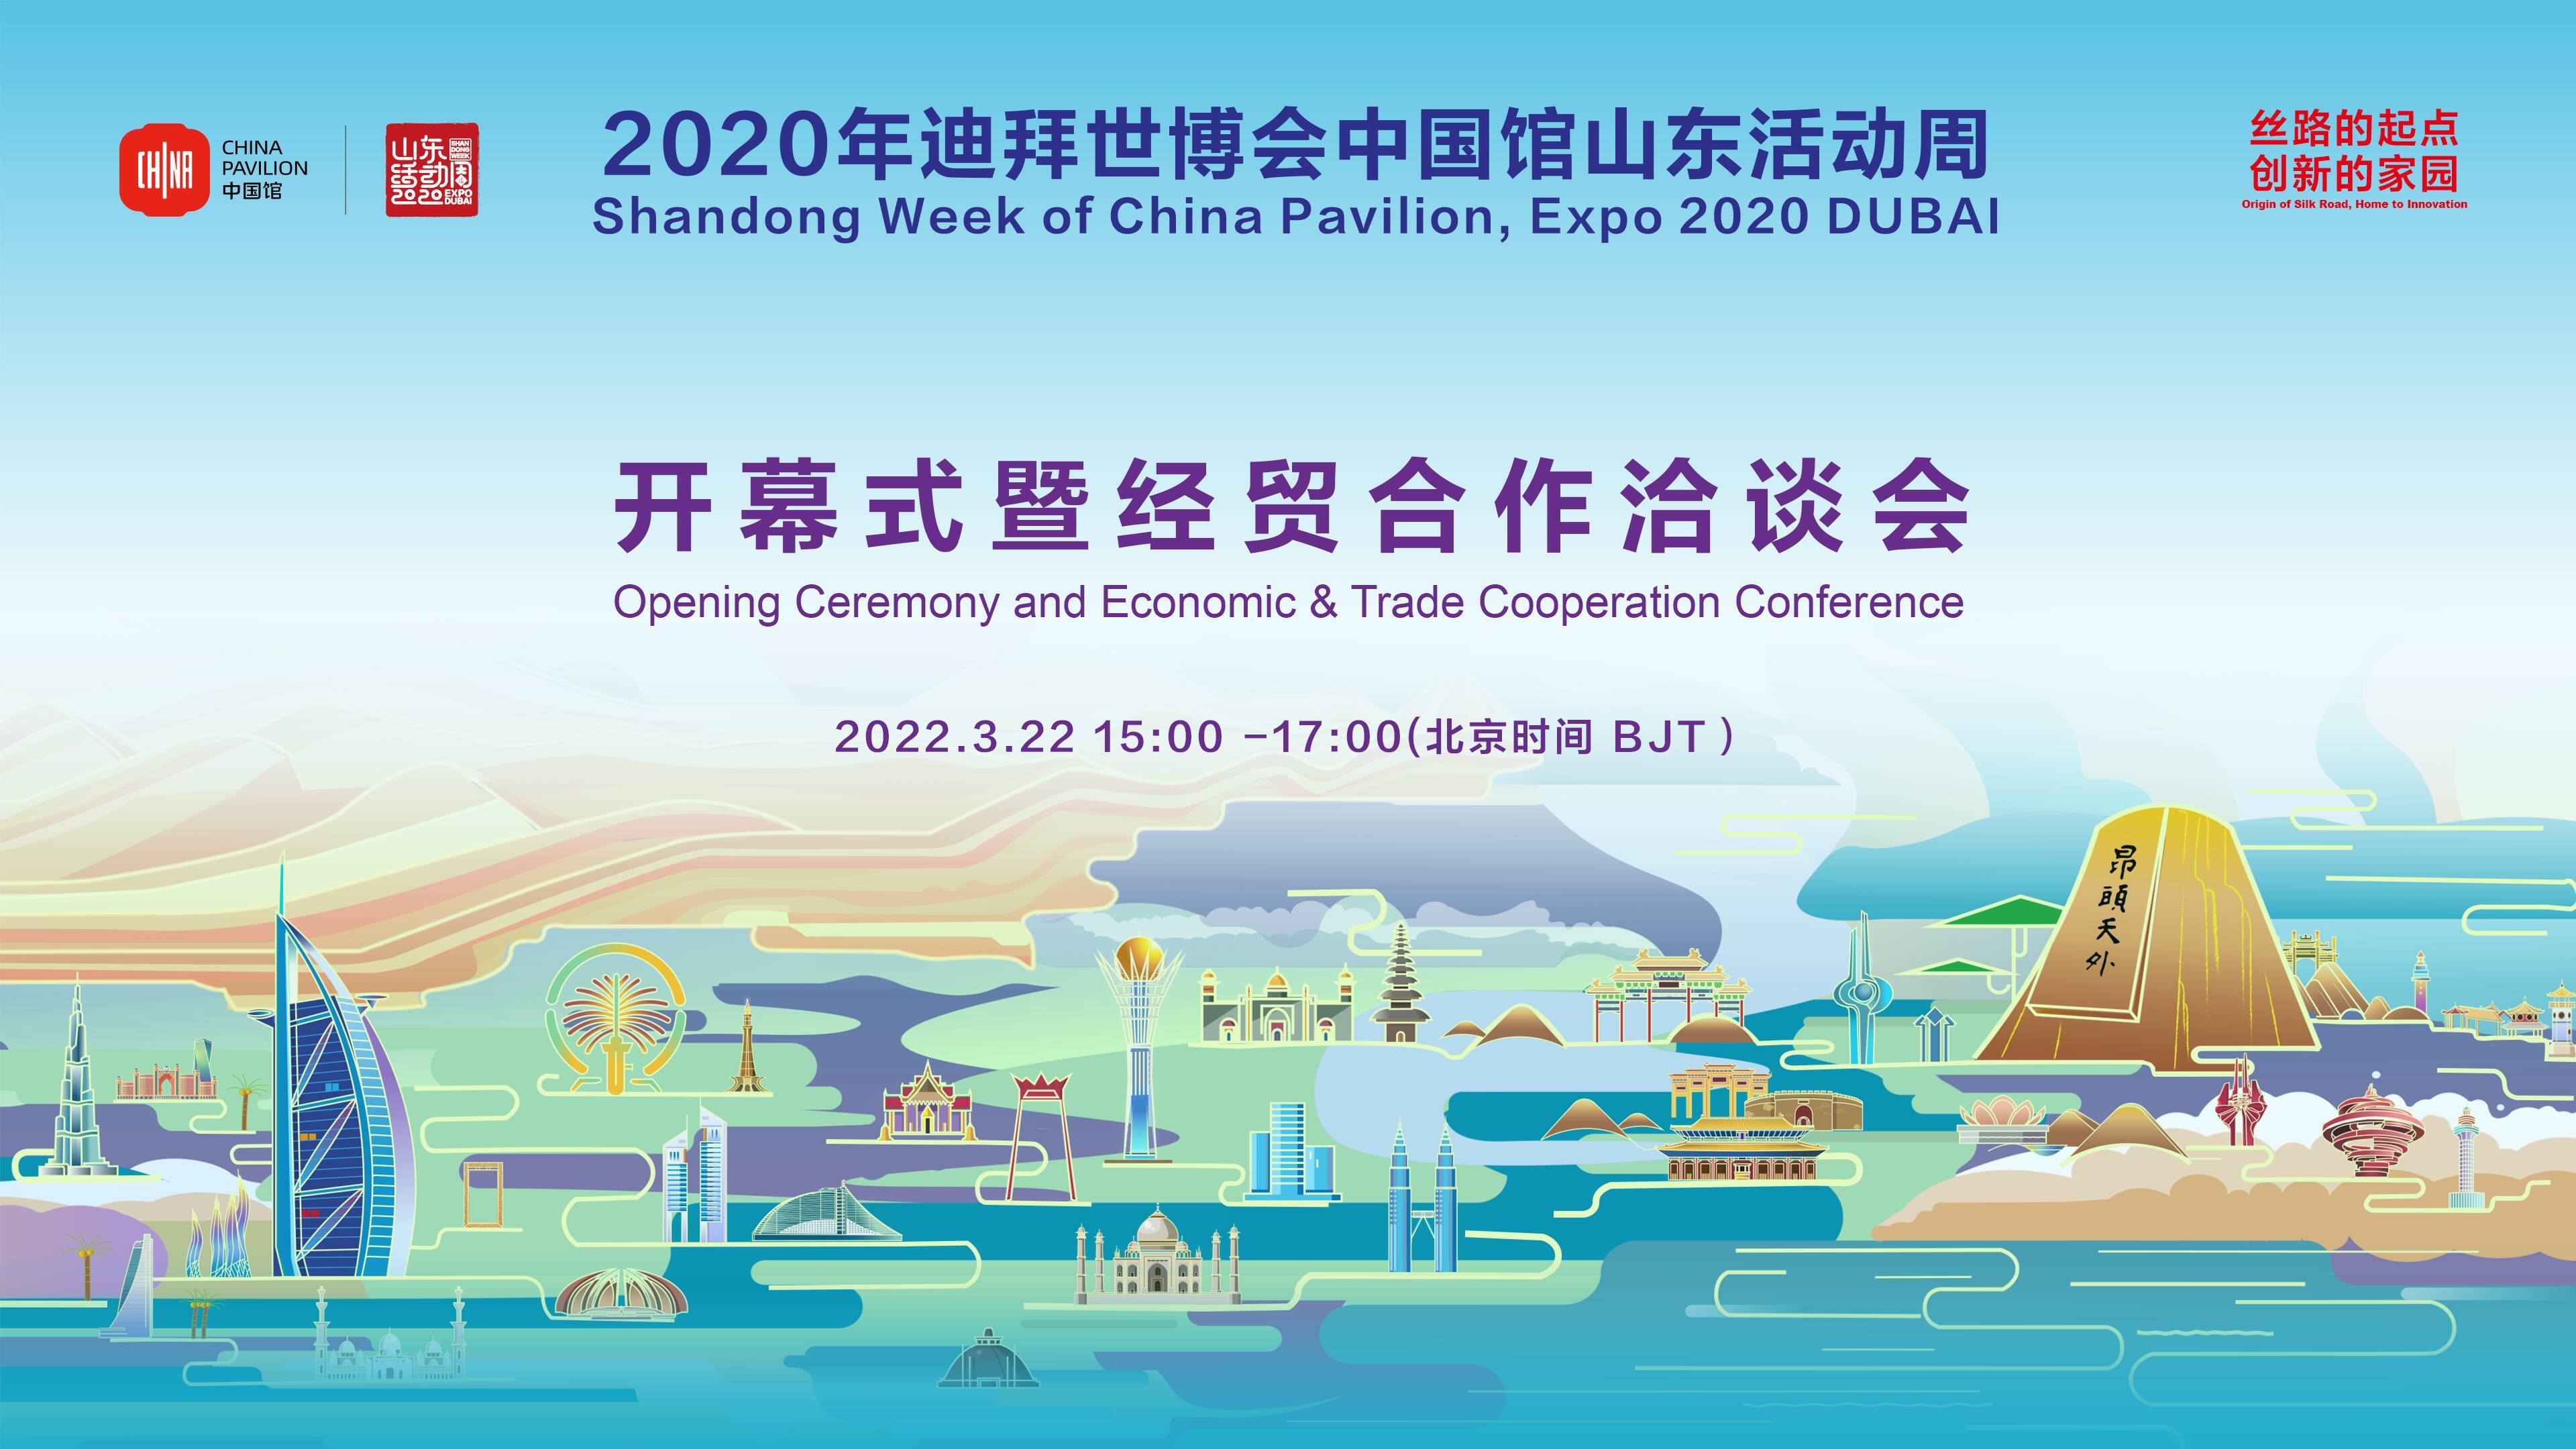 2020迪拜世博会中国馆山东活动周开幕 以“丝路的起点，创新的家园”为主题